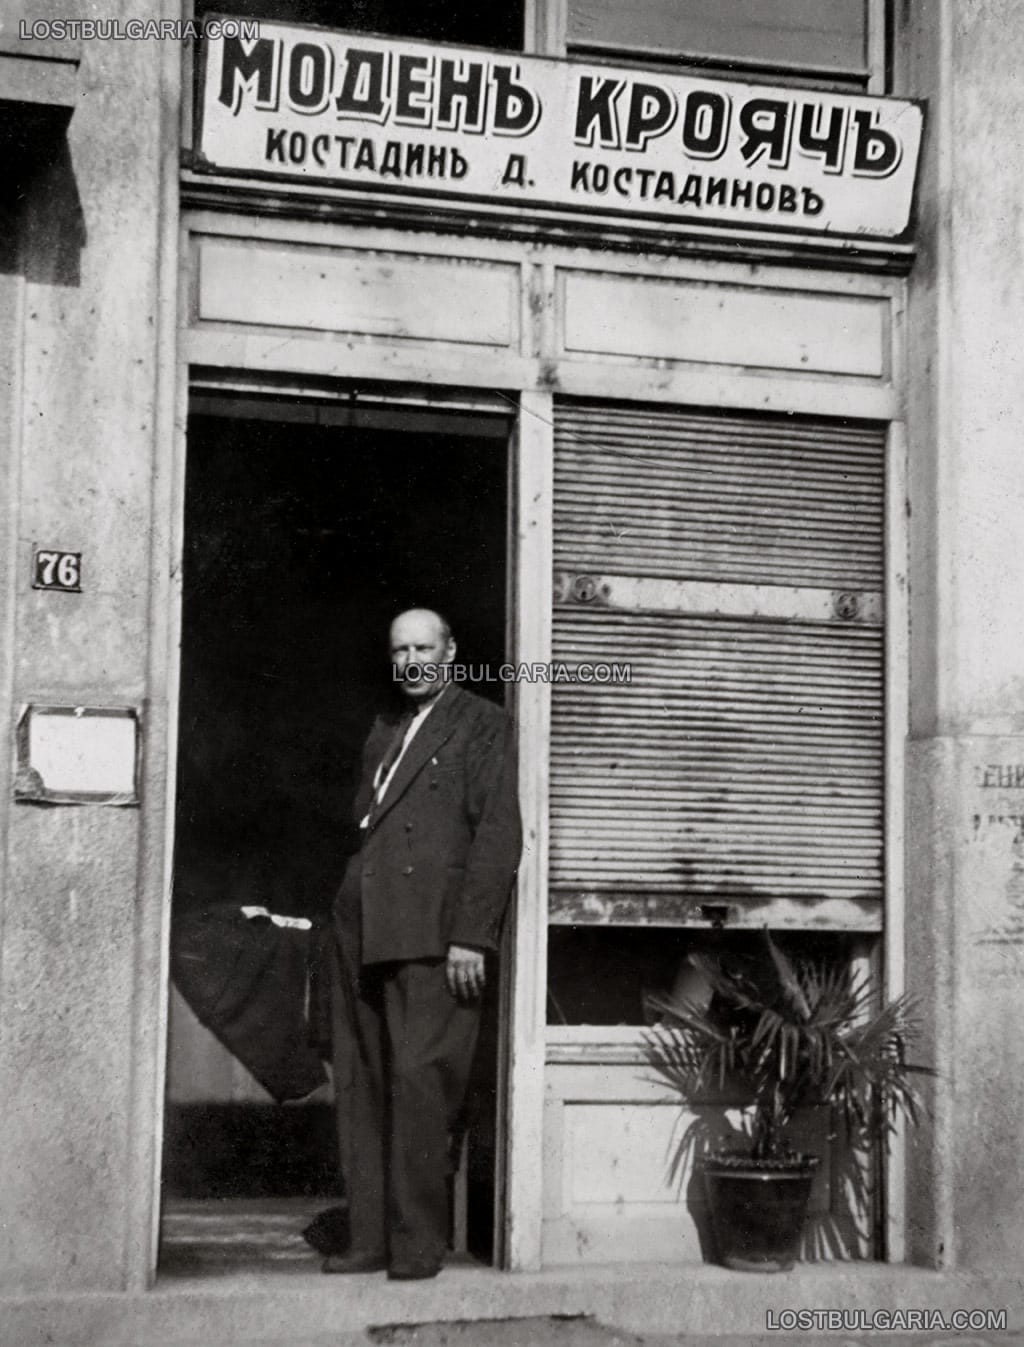 Костадин Д. Костадинов - моден крояч на прага на ателието си, София, 30-те години на ХХ век